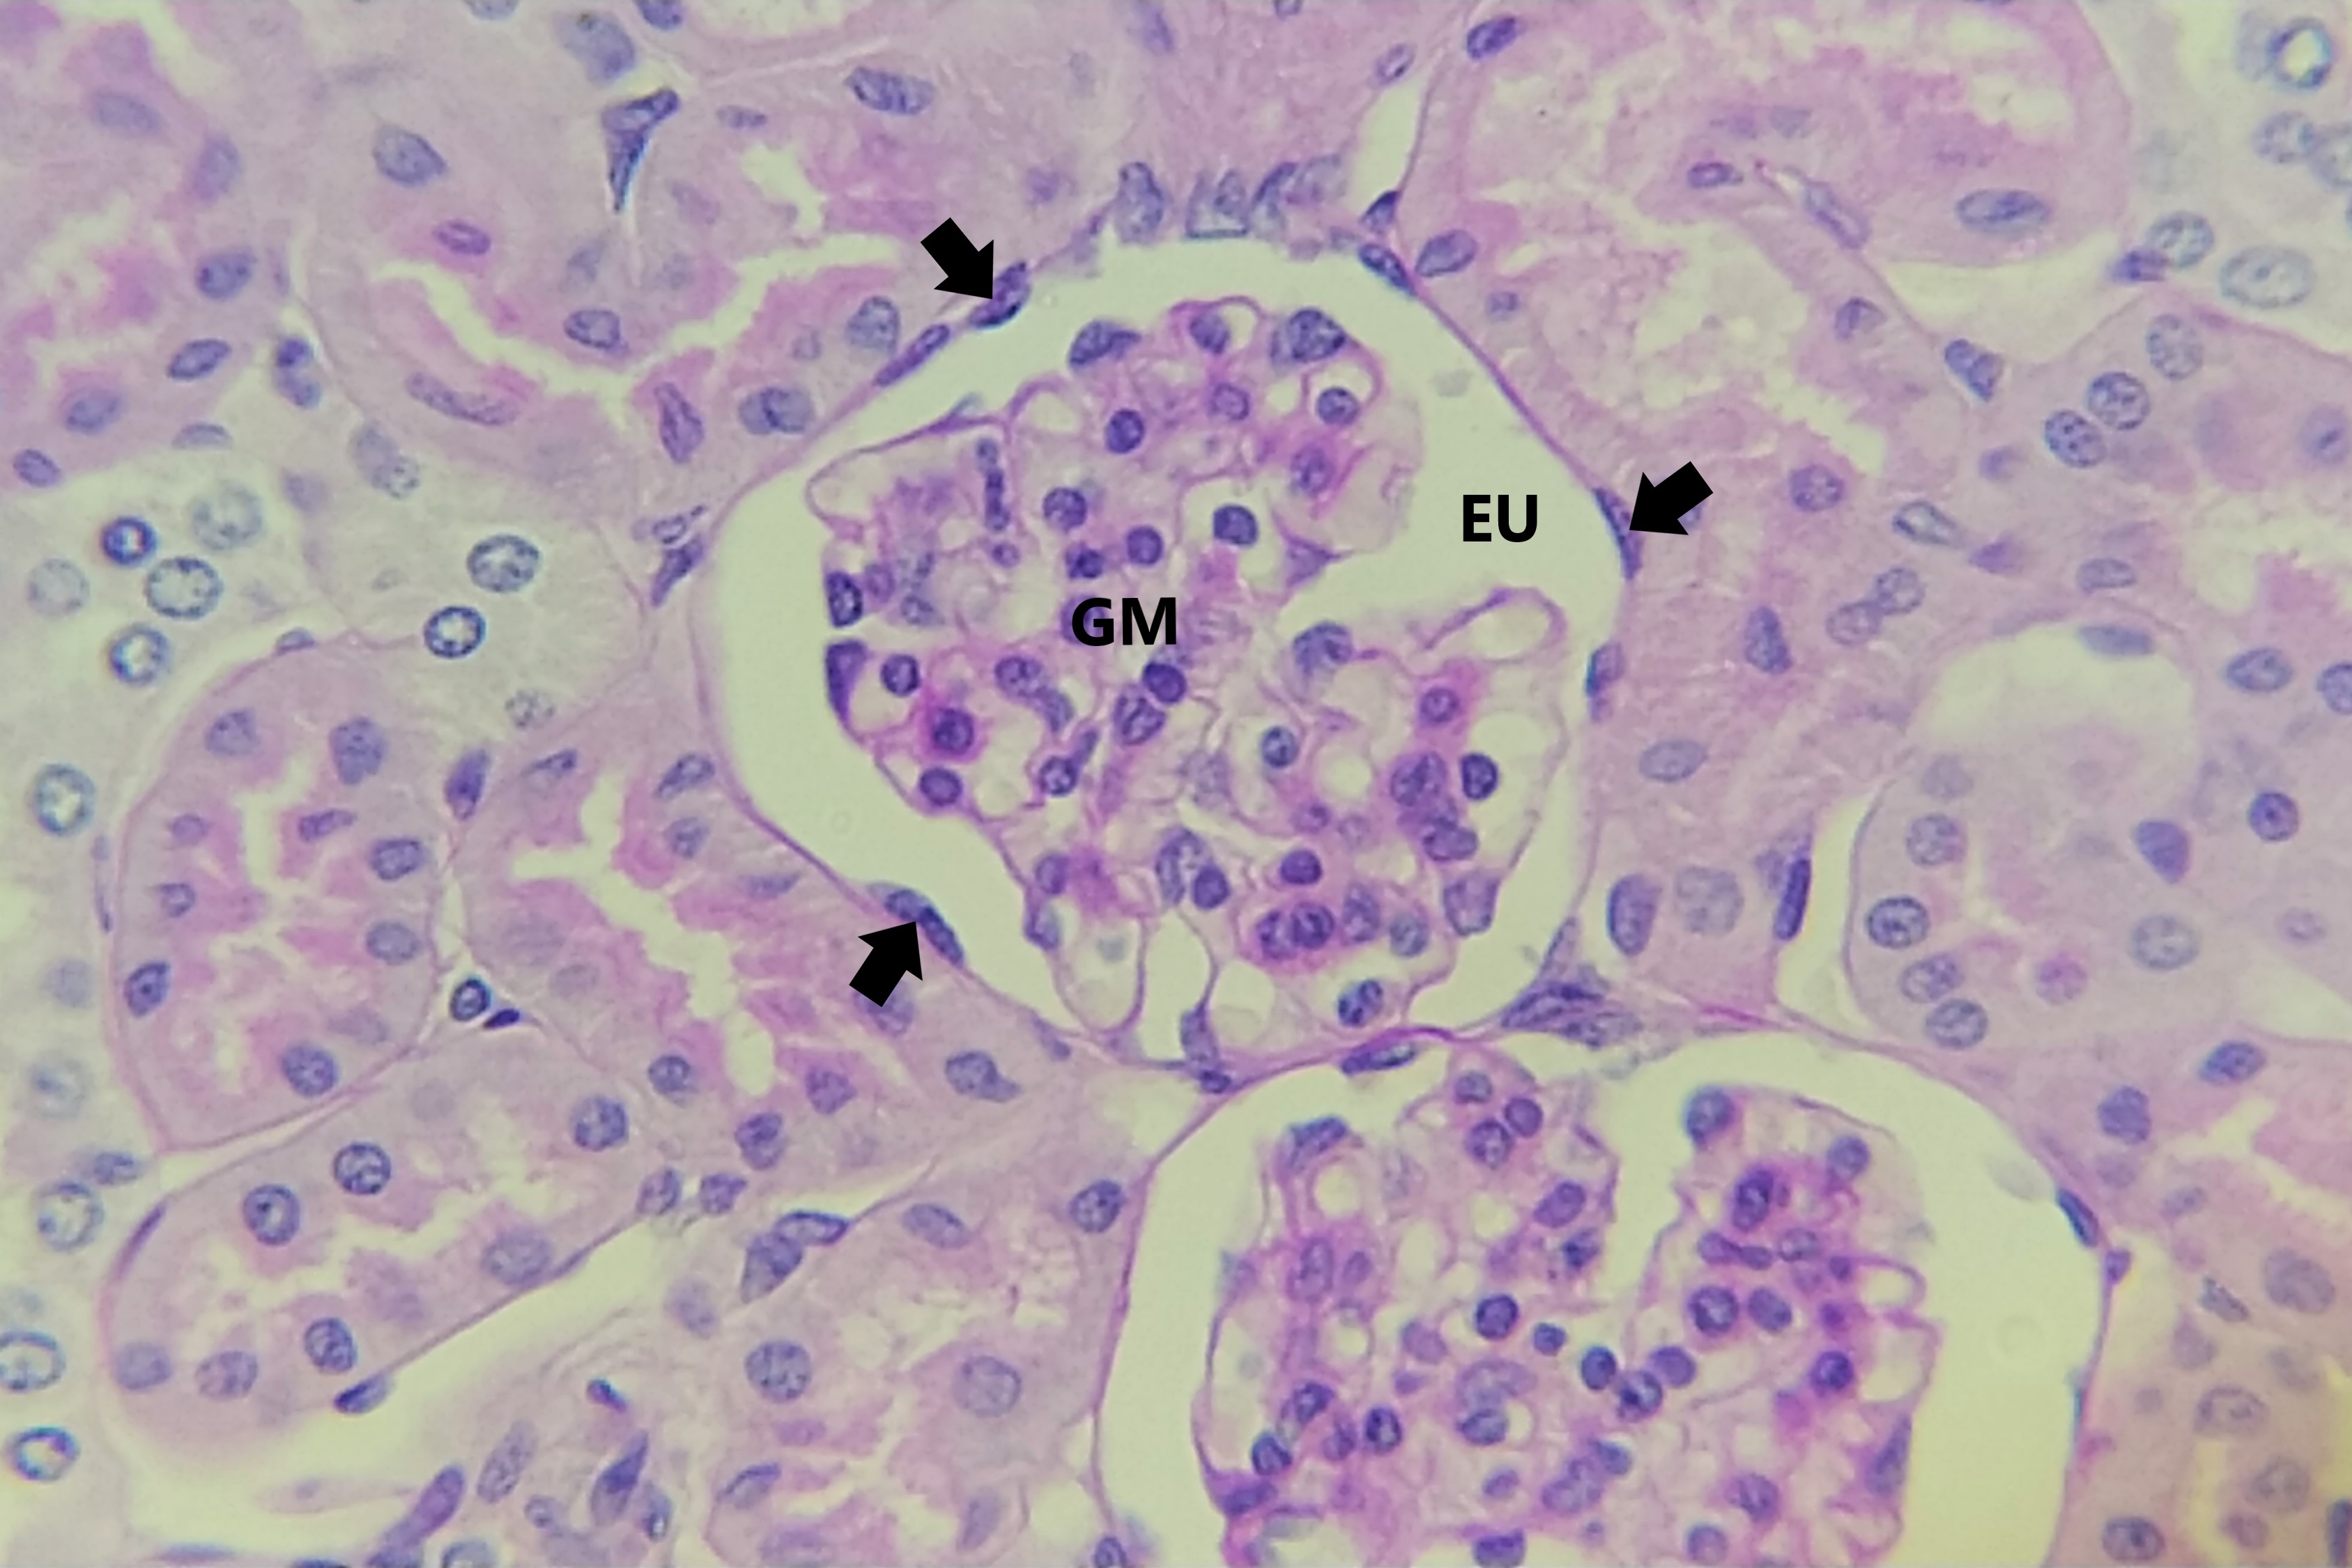 Lâmina: Rim - Córpúsculo renal (H&E - Aumento: 400x). A fotomicrografia ao lado mostra um corpúsculo renal. O corpúsculo é uma estrutura esférica contendo um glomérulo (GM) (tufos de capilares) que é circundado pela cápsula renal (de Bowman). O folheto mais externo da cápsula renal, conhecido como folheto parietal, consiste no epitélio simples pavimentoso.  Os núcleos (setas) das células pavimentosas do folheto parietal são de aspecto ovoide e fazem uma leve saliência para o interior do espaço urinário (EU).